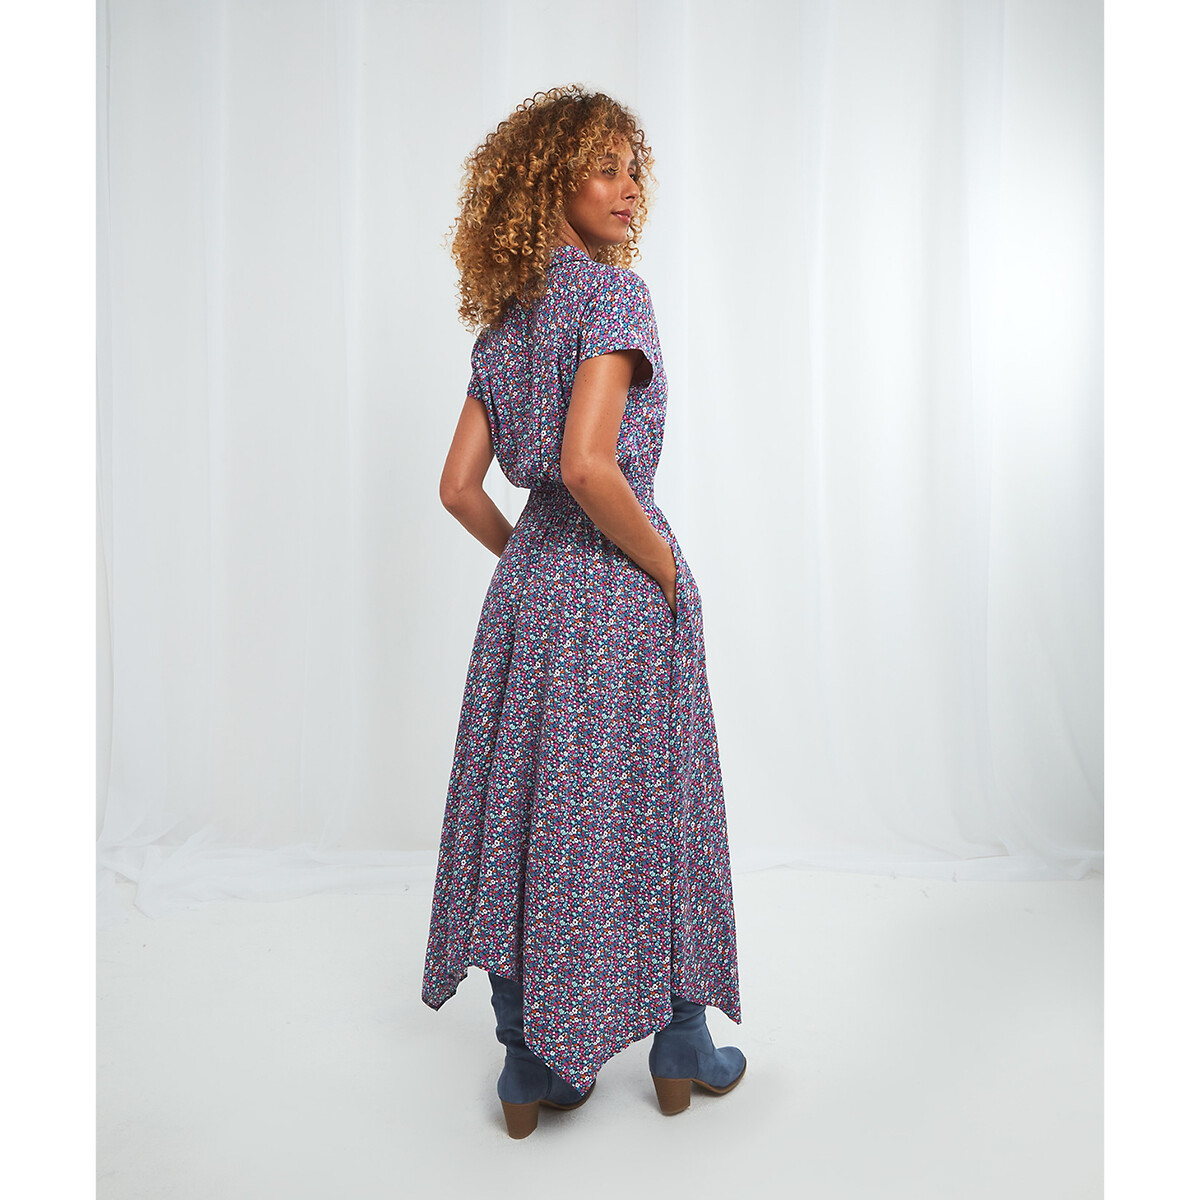 Платье JOE BROWNS Длинное асимметричное с поясом со сборками 50 другие, размер 50 - фото 2